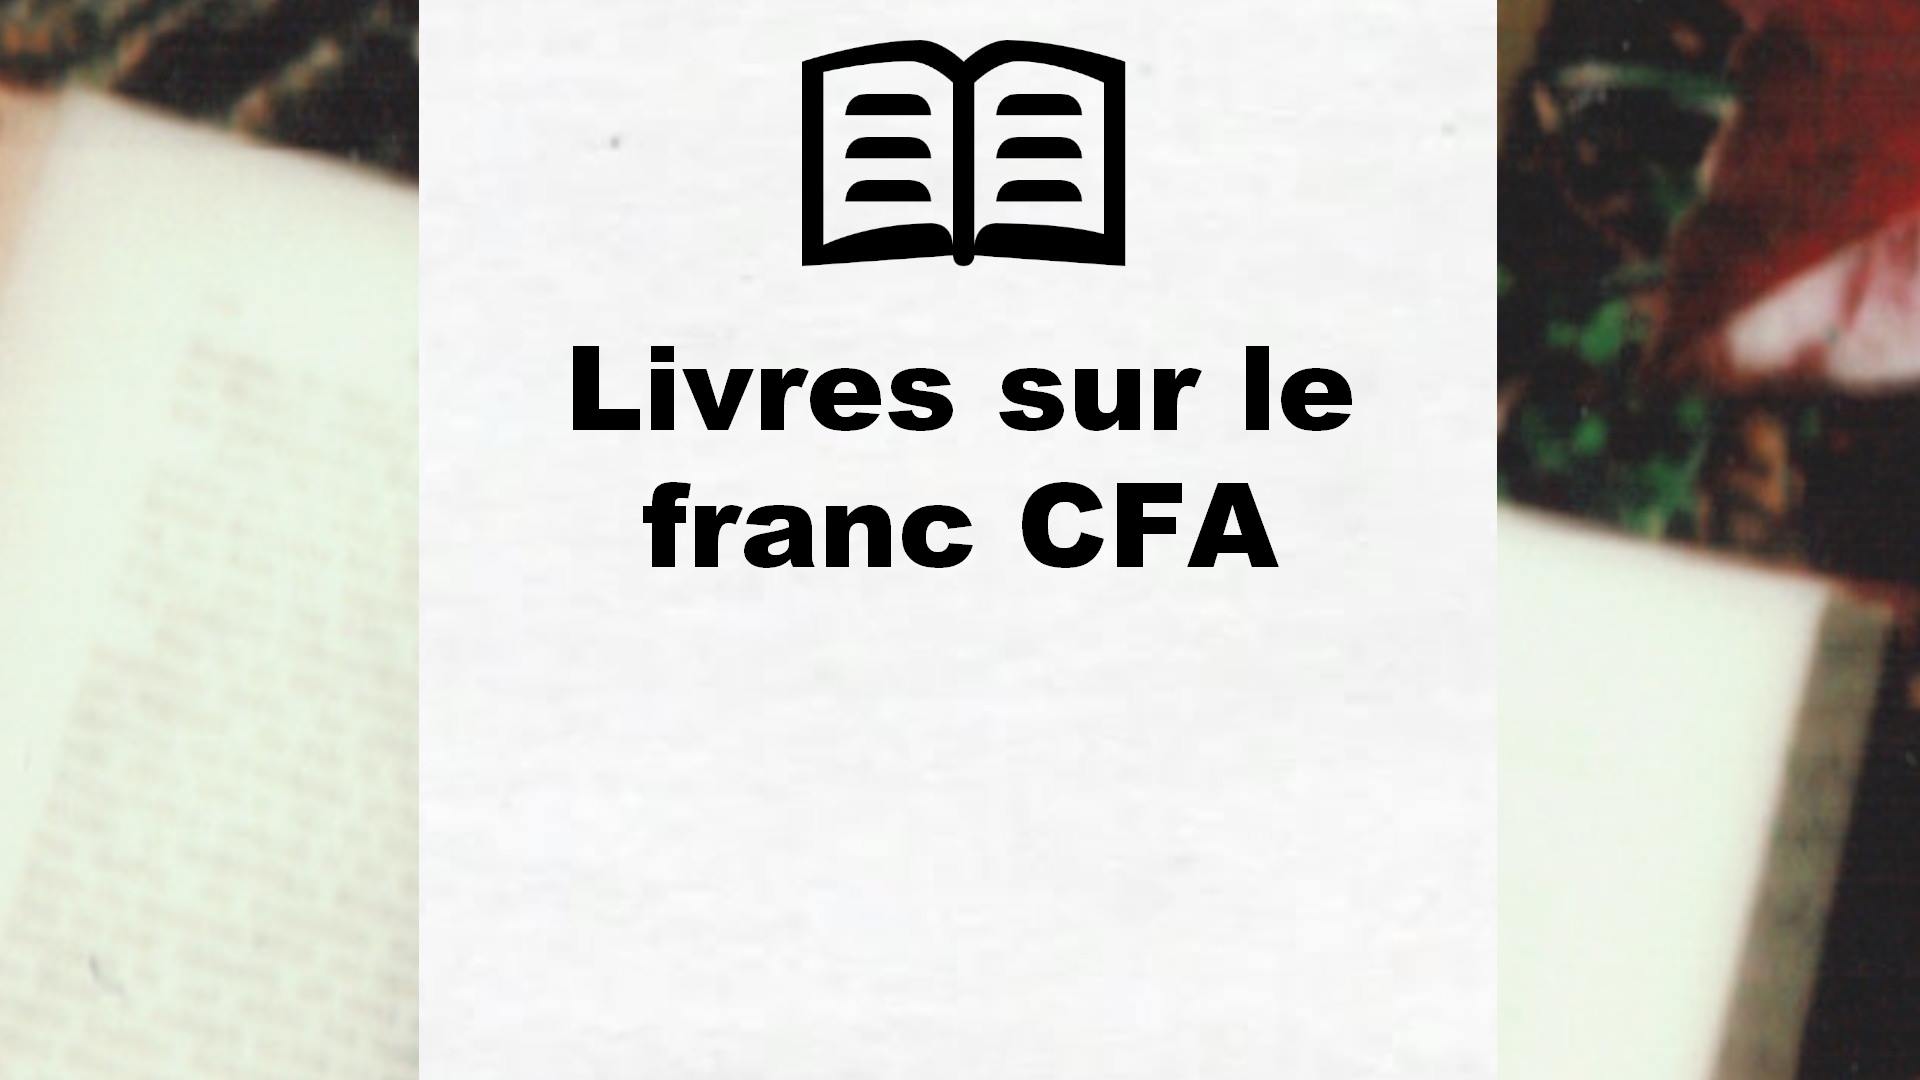 Livres sur le franc CFA